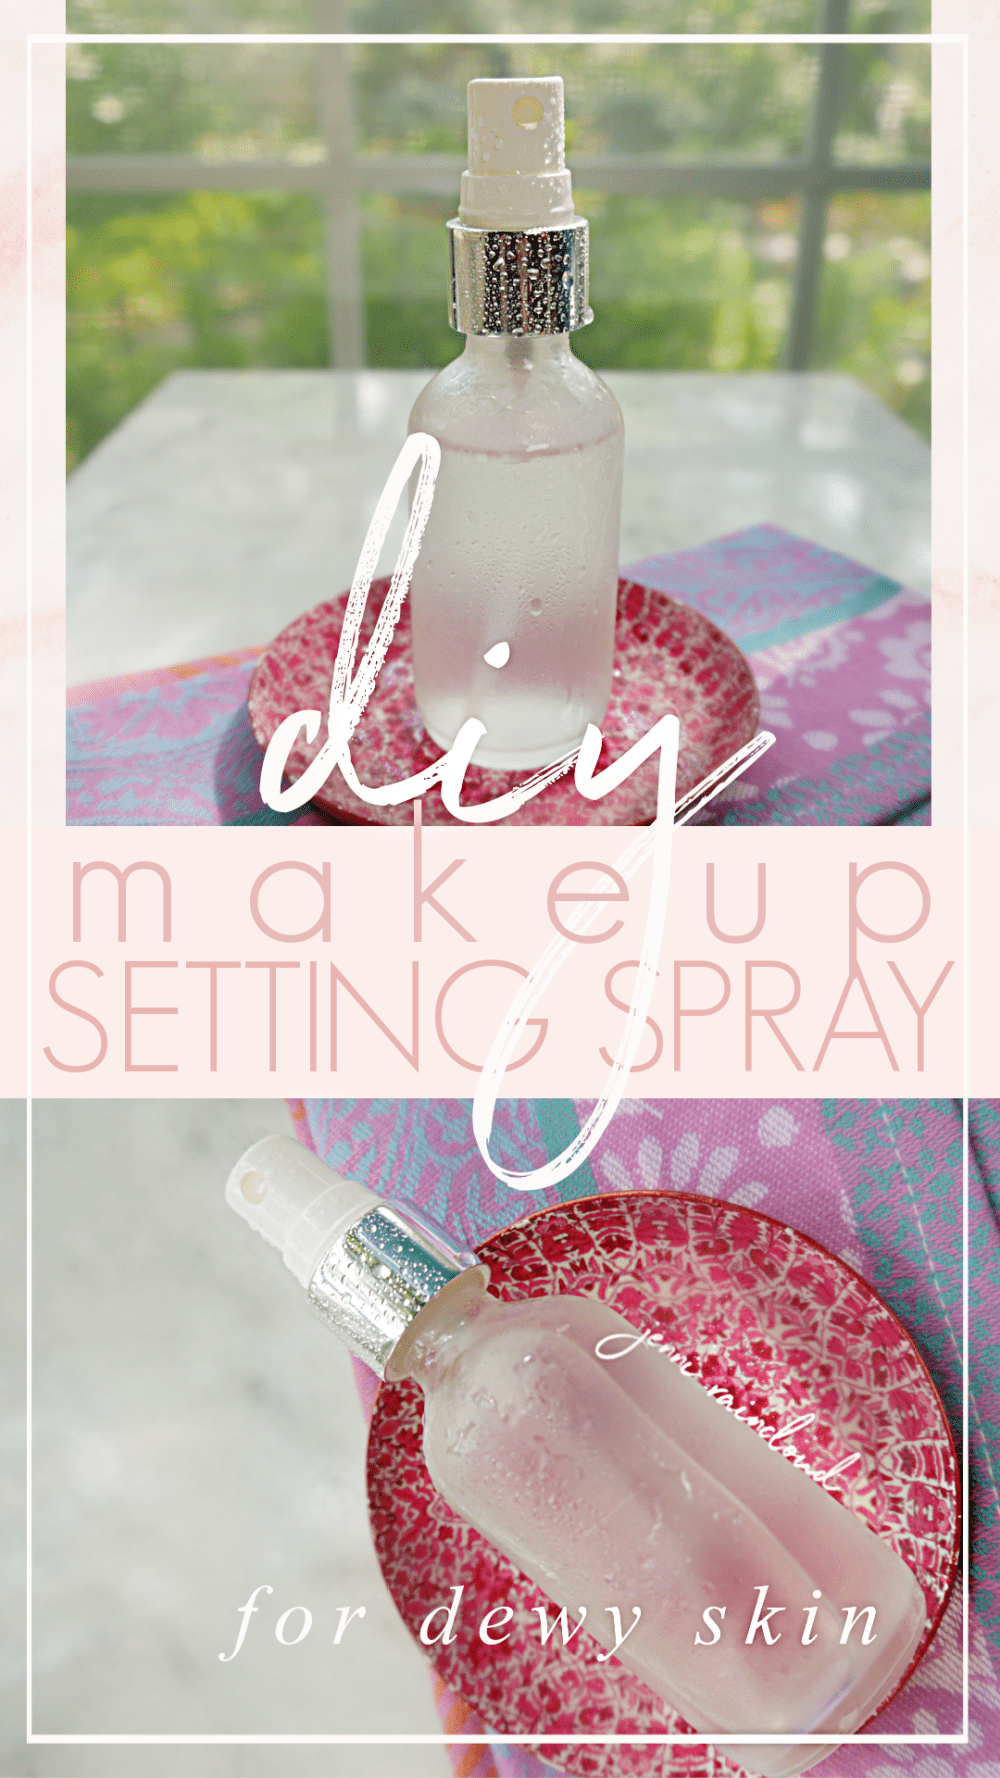 DIY Makeup Setting Spray